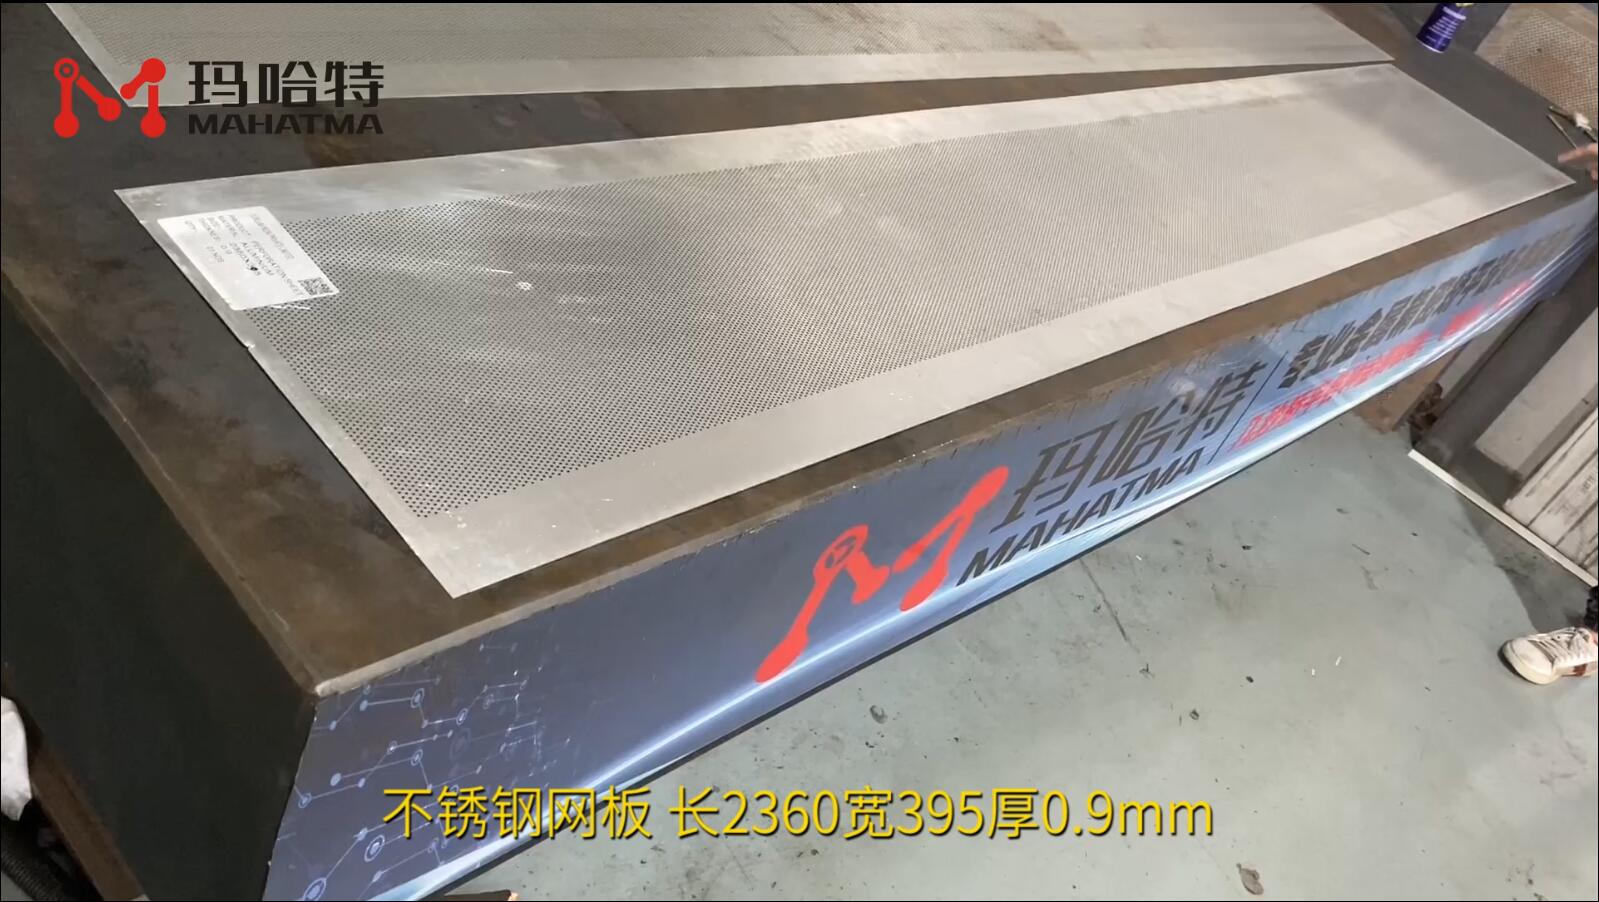 不锈钢网板 MHT30-1300 长方形 长2360宽395厚0.9mm